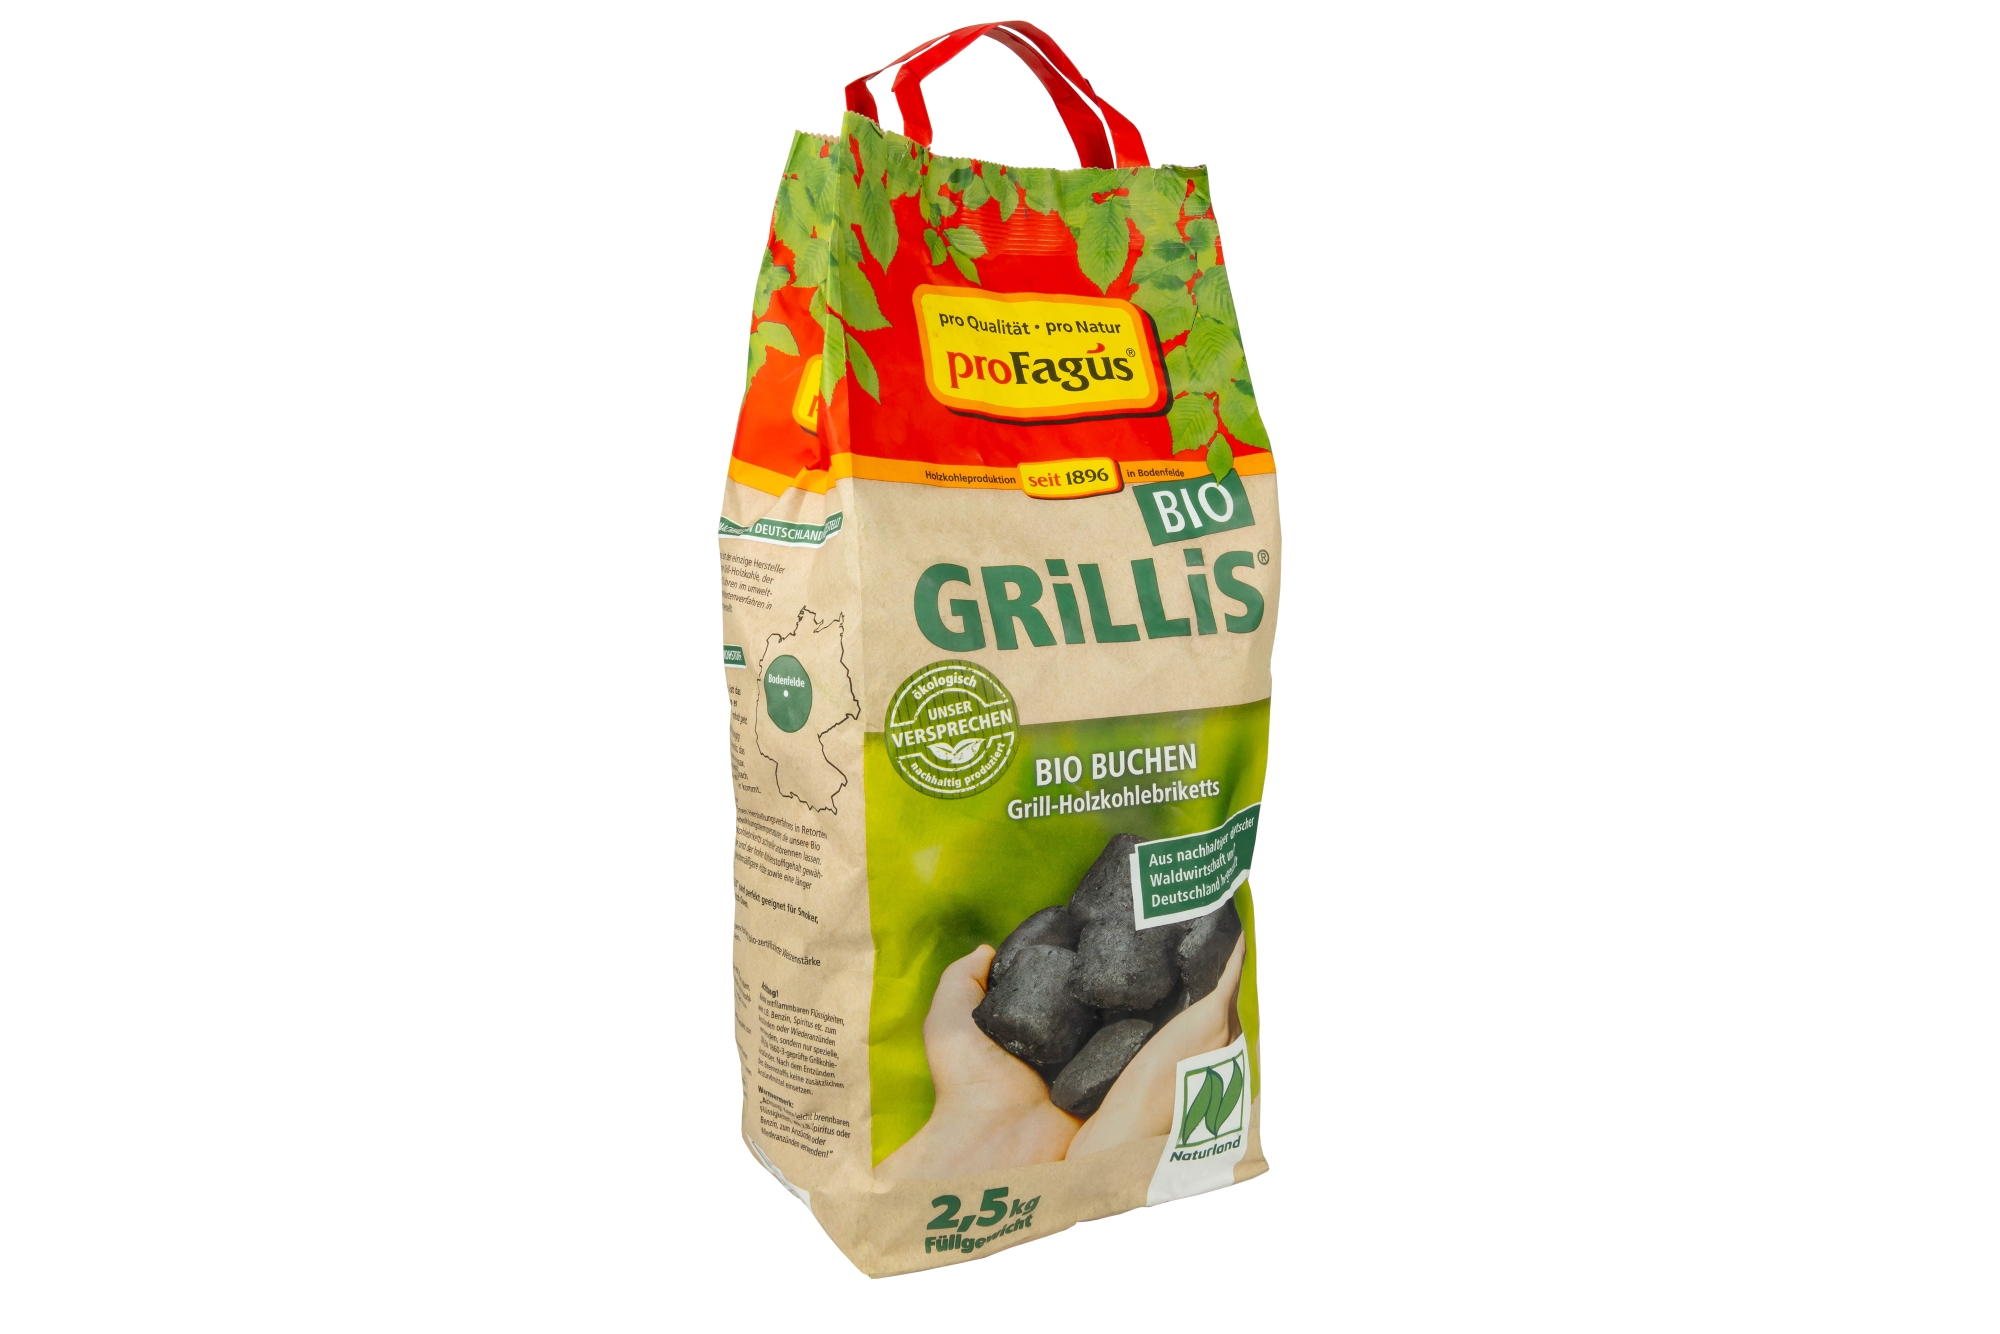 GRiLLiS® – Buchen Grill-Holzkohlebriketts in Bio-Qualität, 2,5 kg